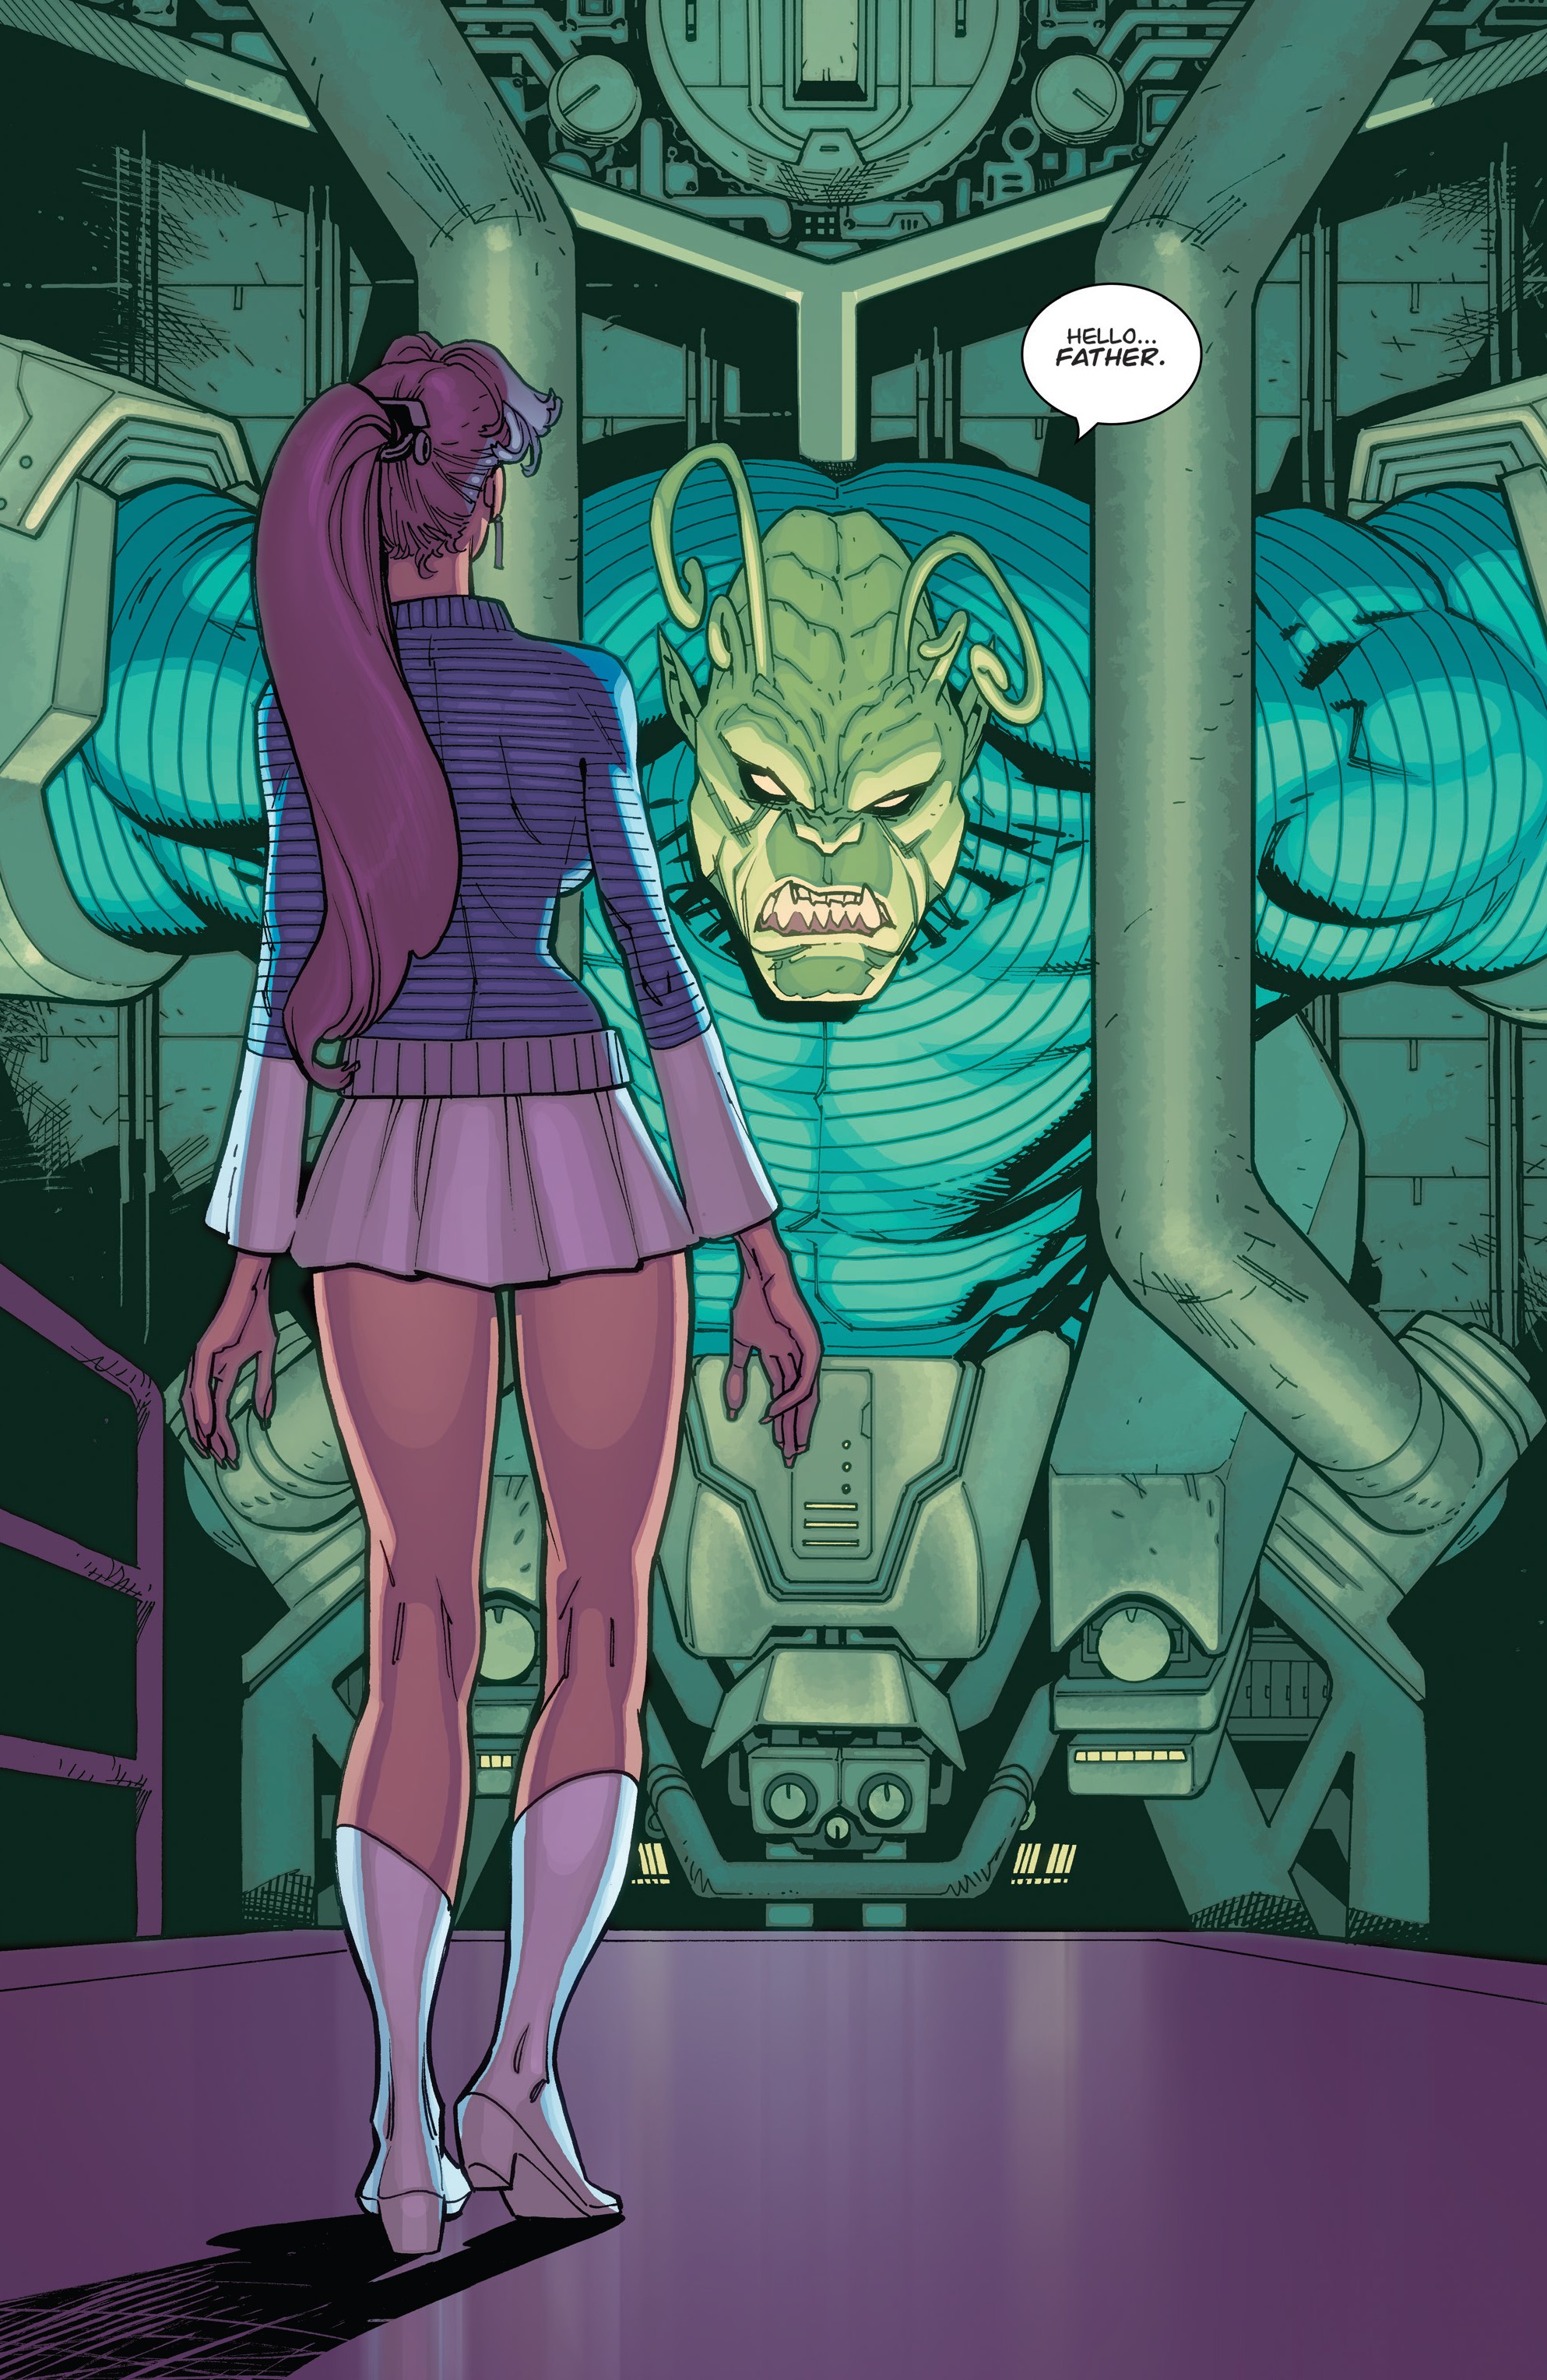 General 1987x3056 Invincible monster girl superhero portrait display digital art comics